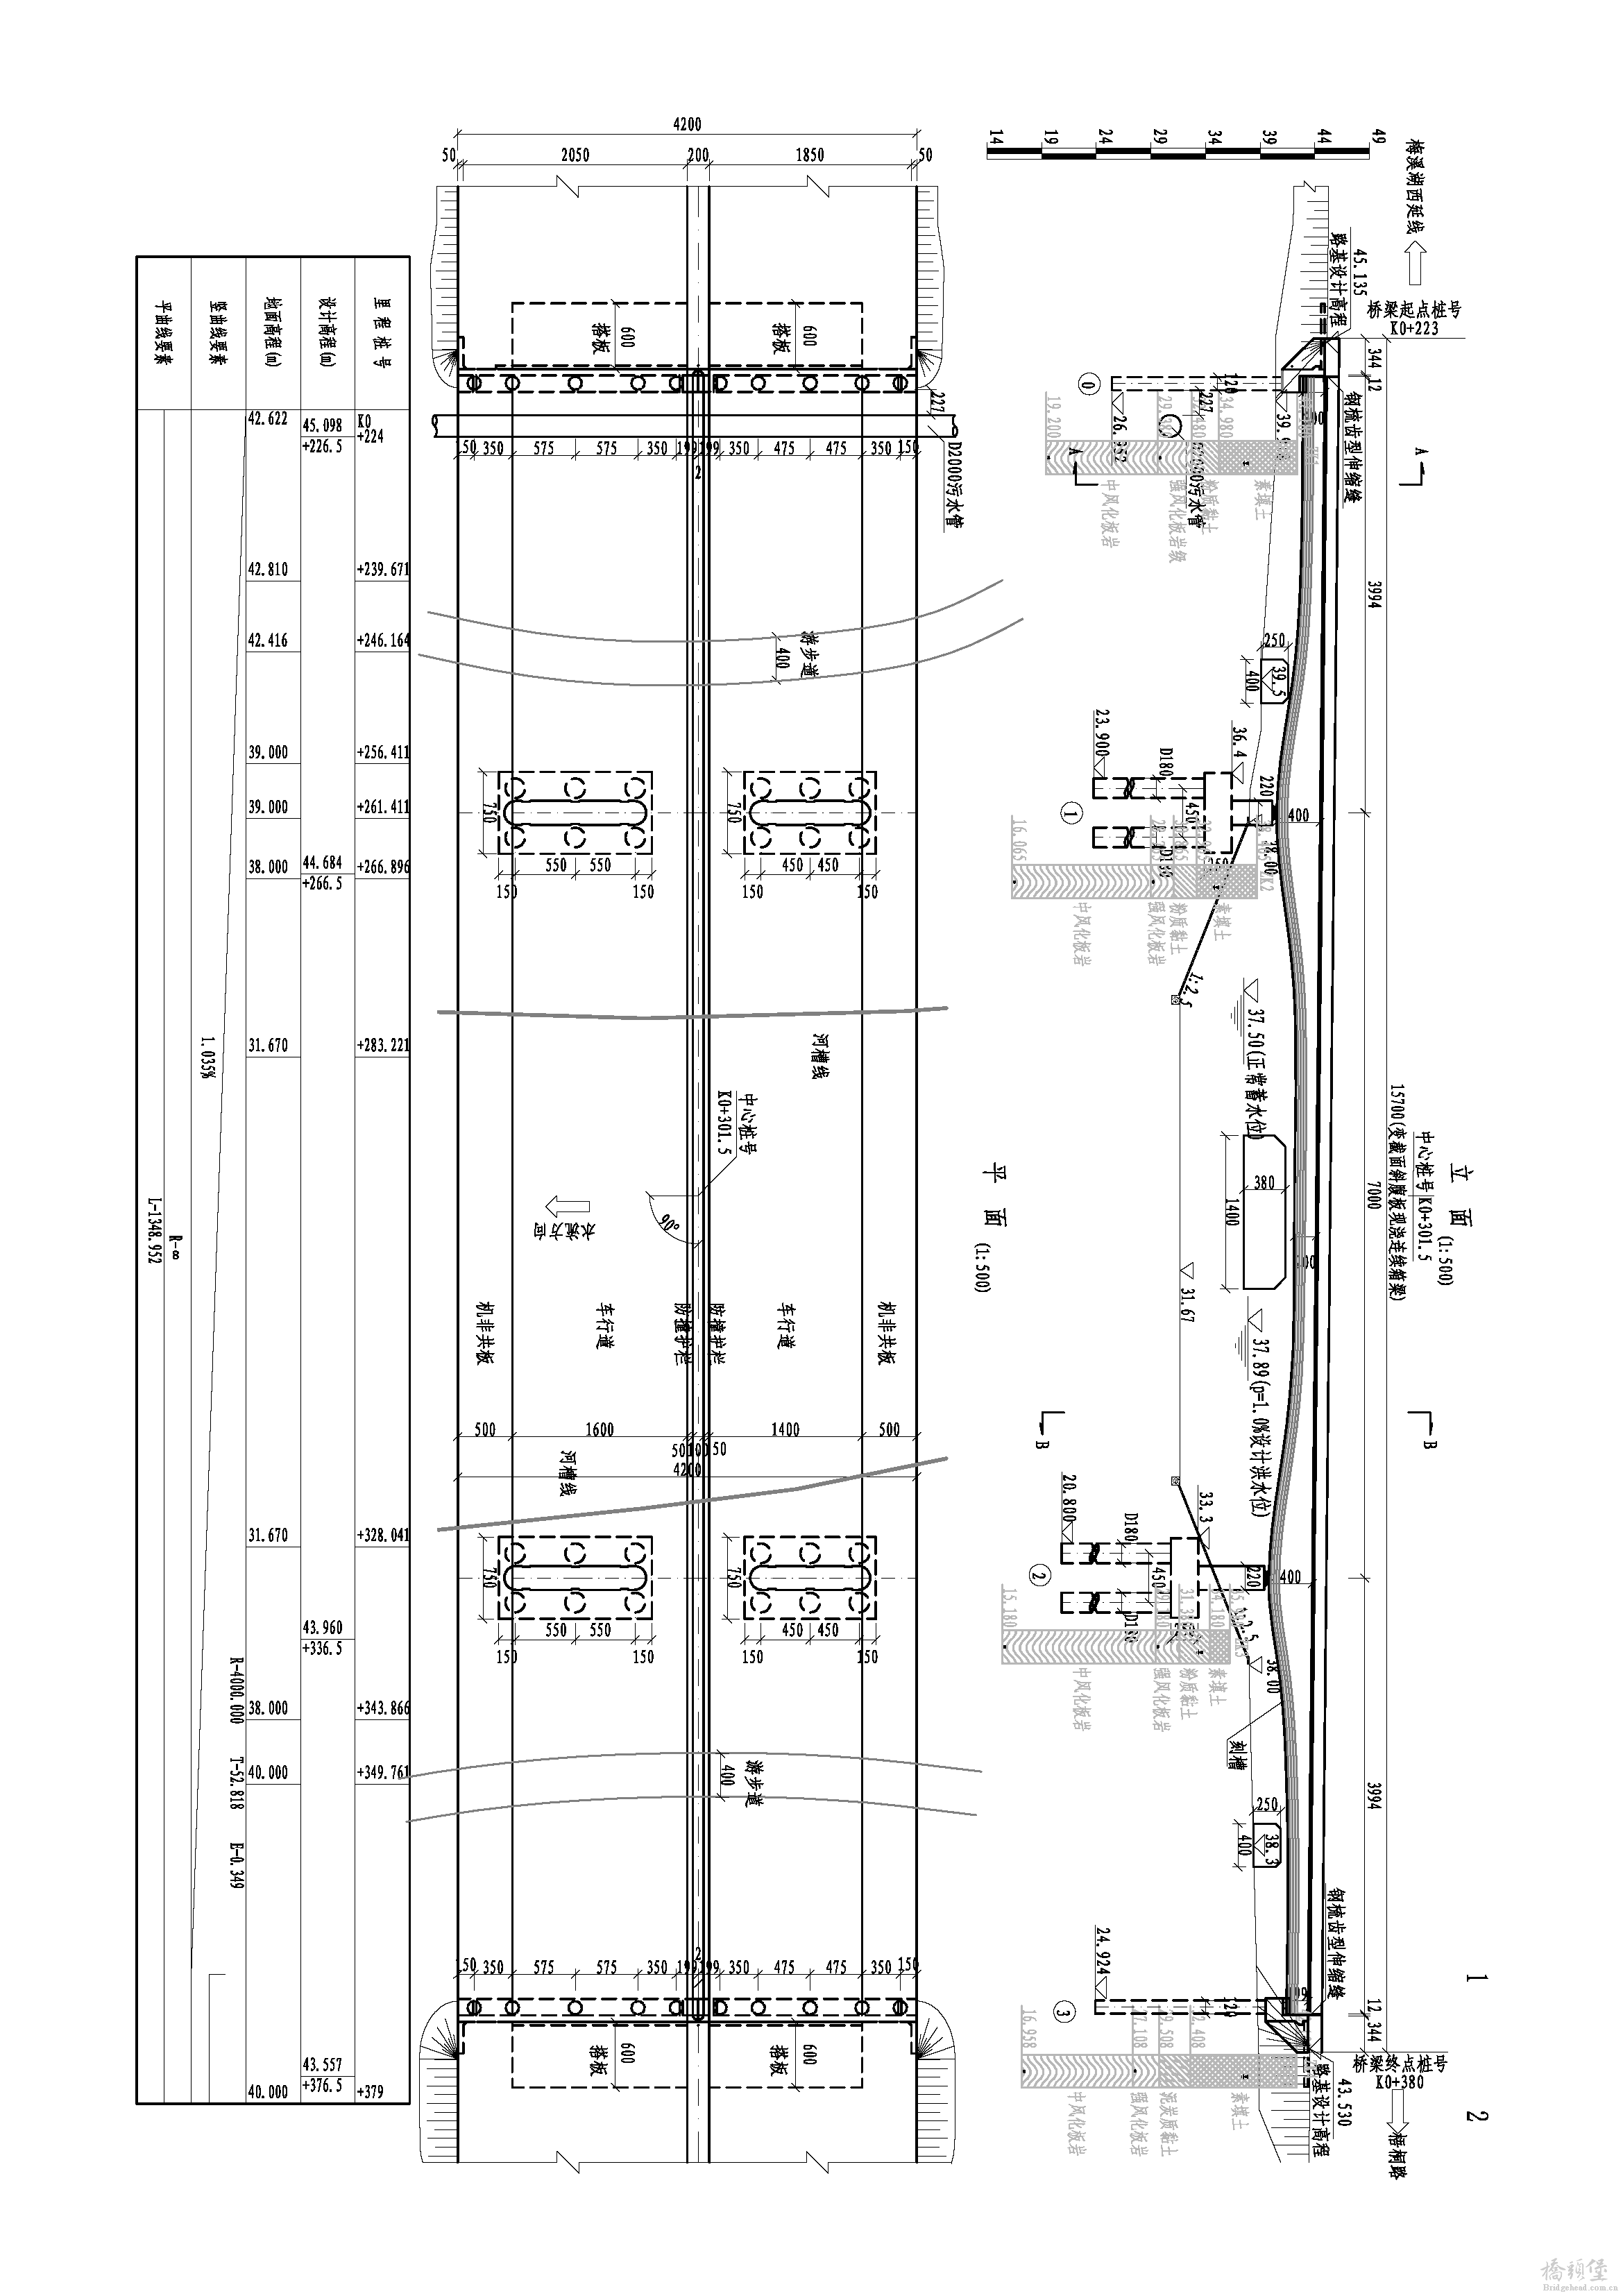 03 金菊路桥桥型布置图 Model (1).png